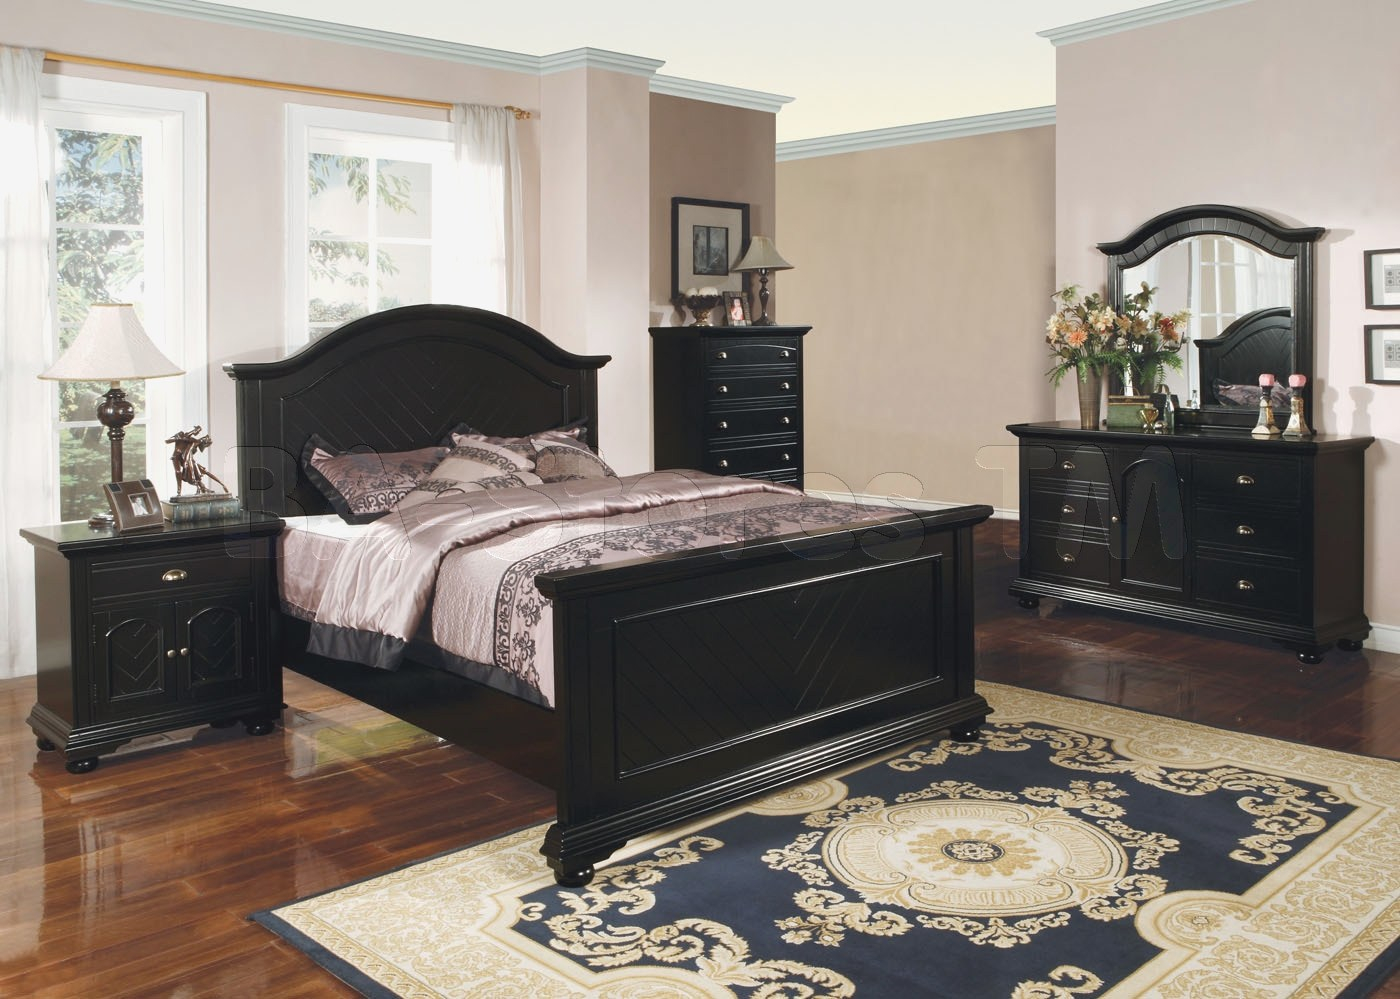 Morkels Bedroom Furniture Sets Ideas Bedrooms Photo Design Queen regarding size 1400 X 999